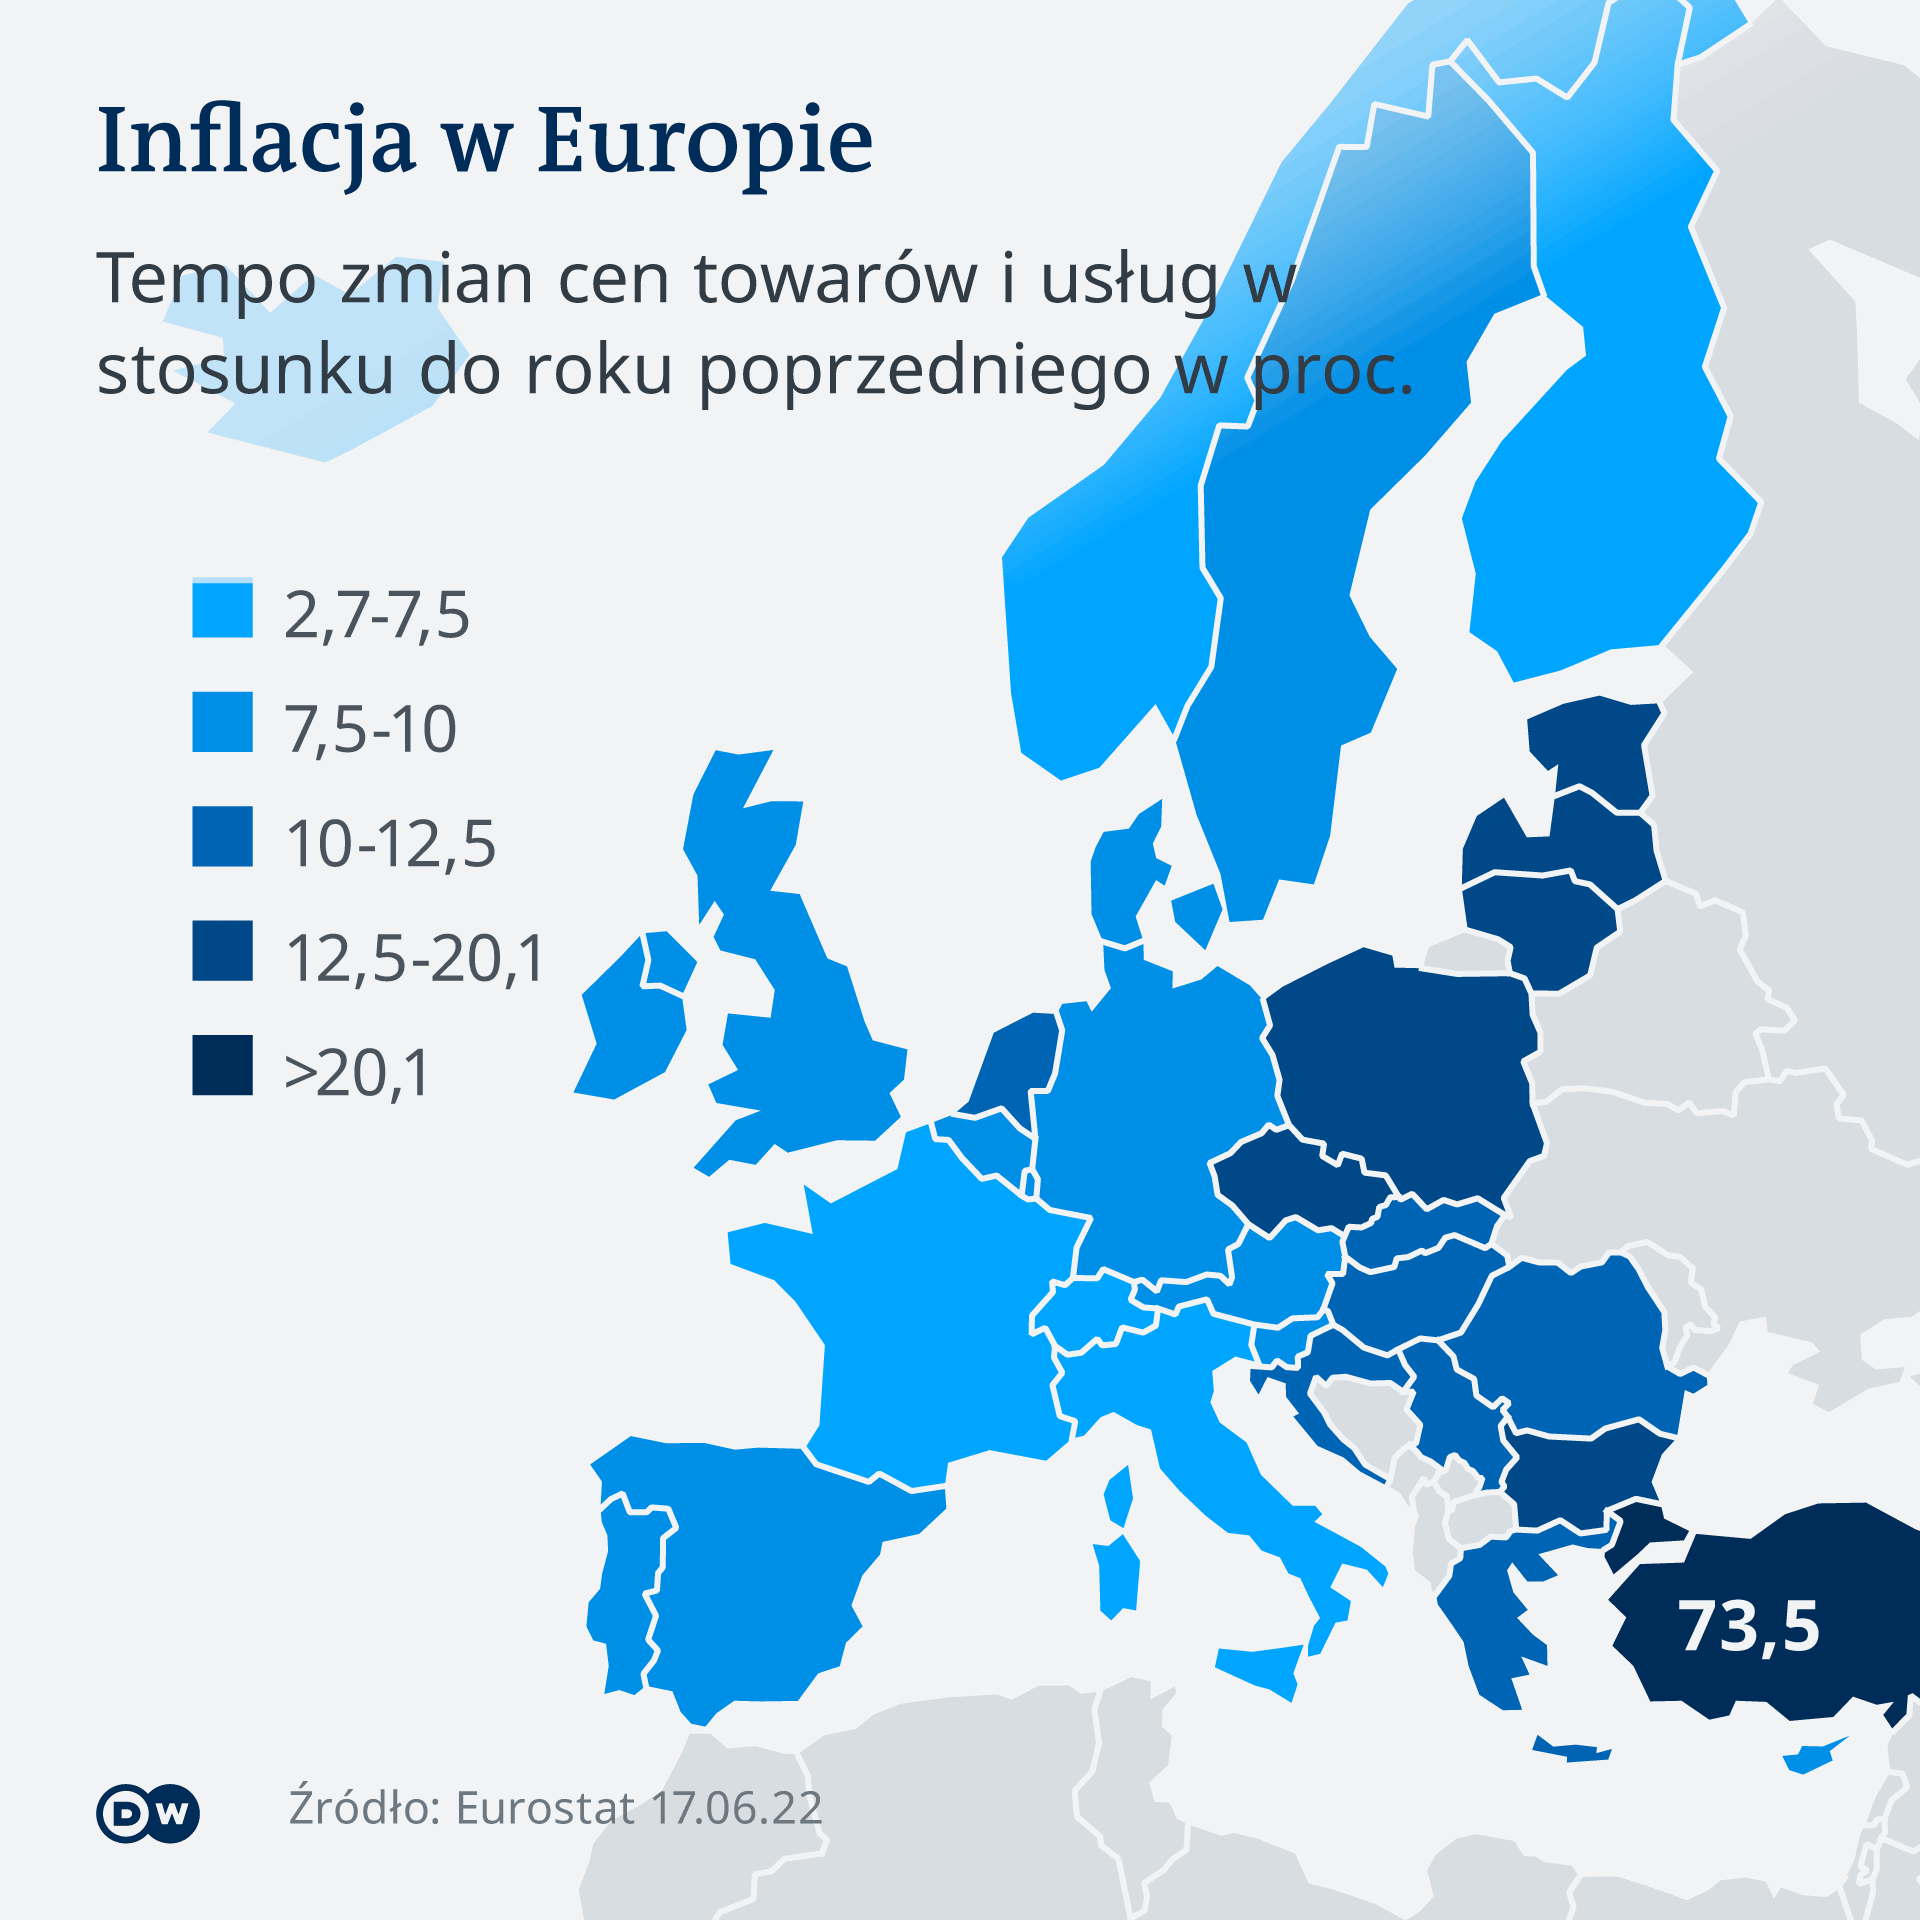 Wzrost inflacji dotyka ludzi w całej Europie